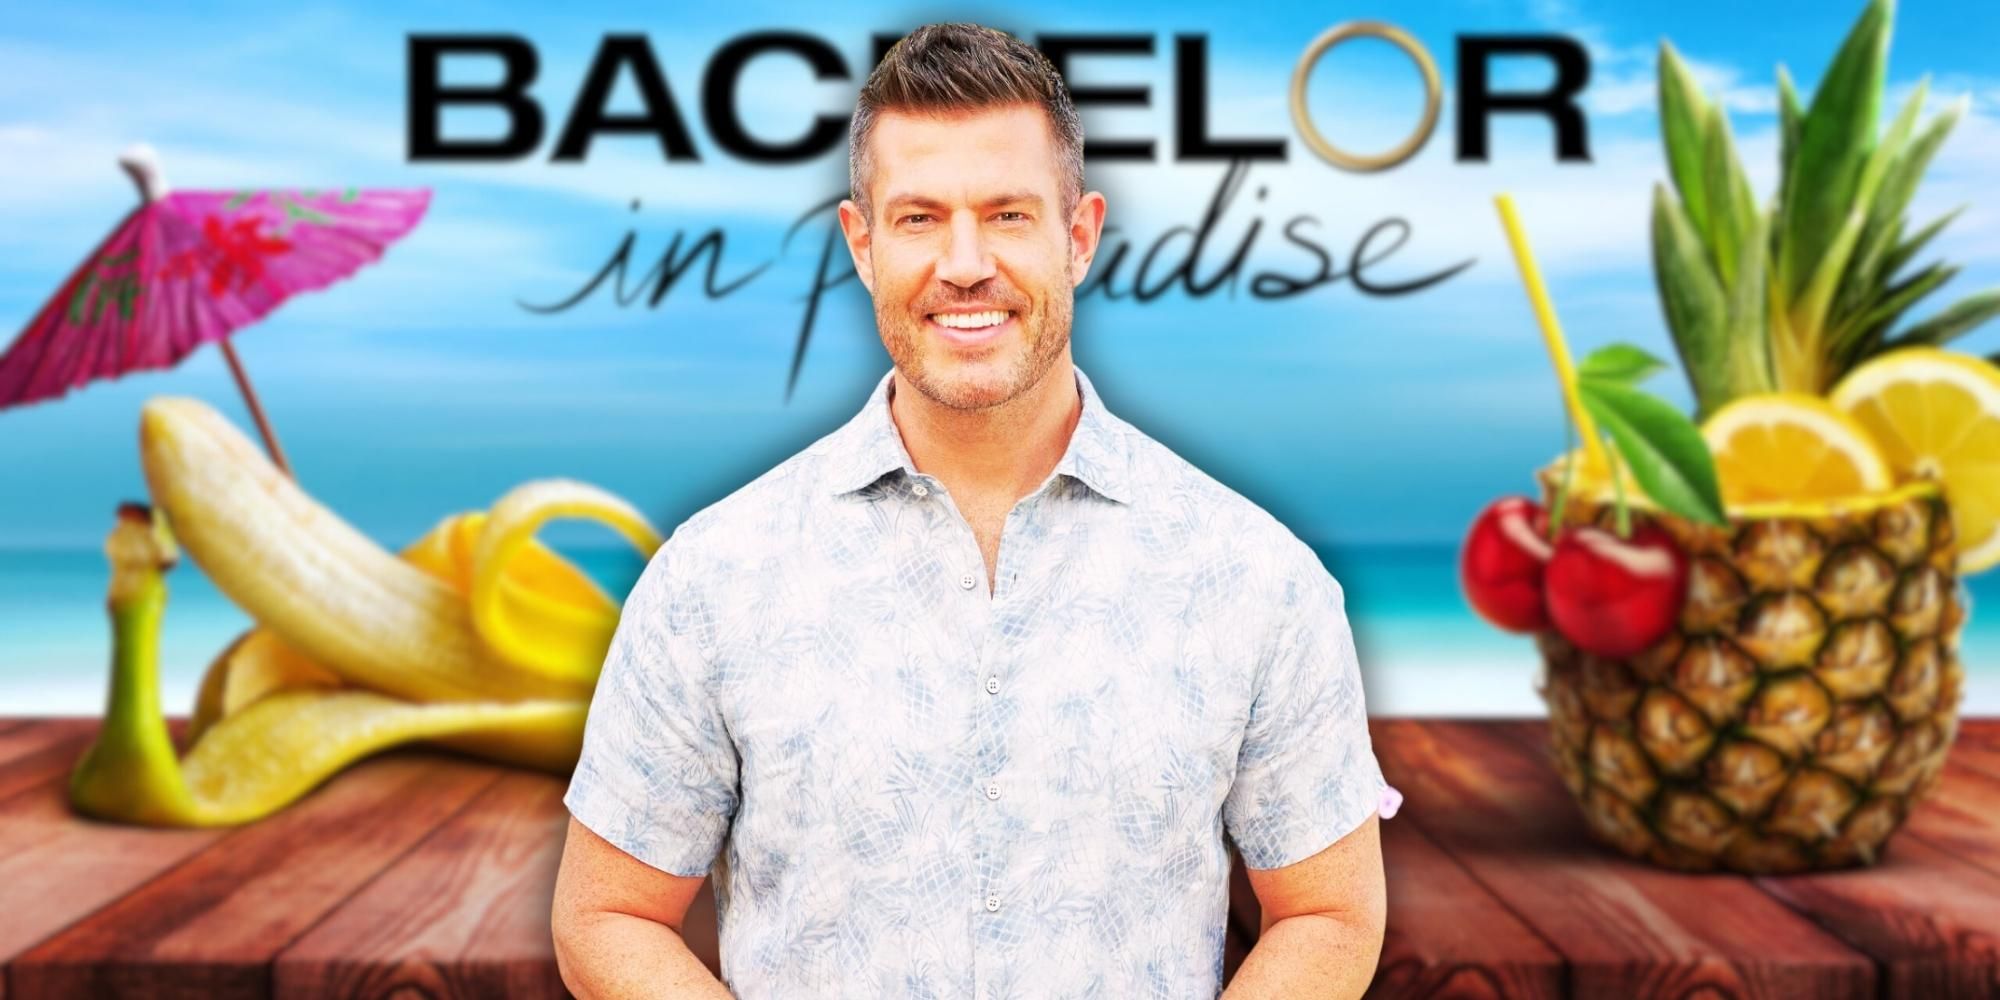 Where Was Bachelor In Paradise Season 9 Filmed?